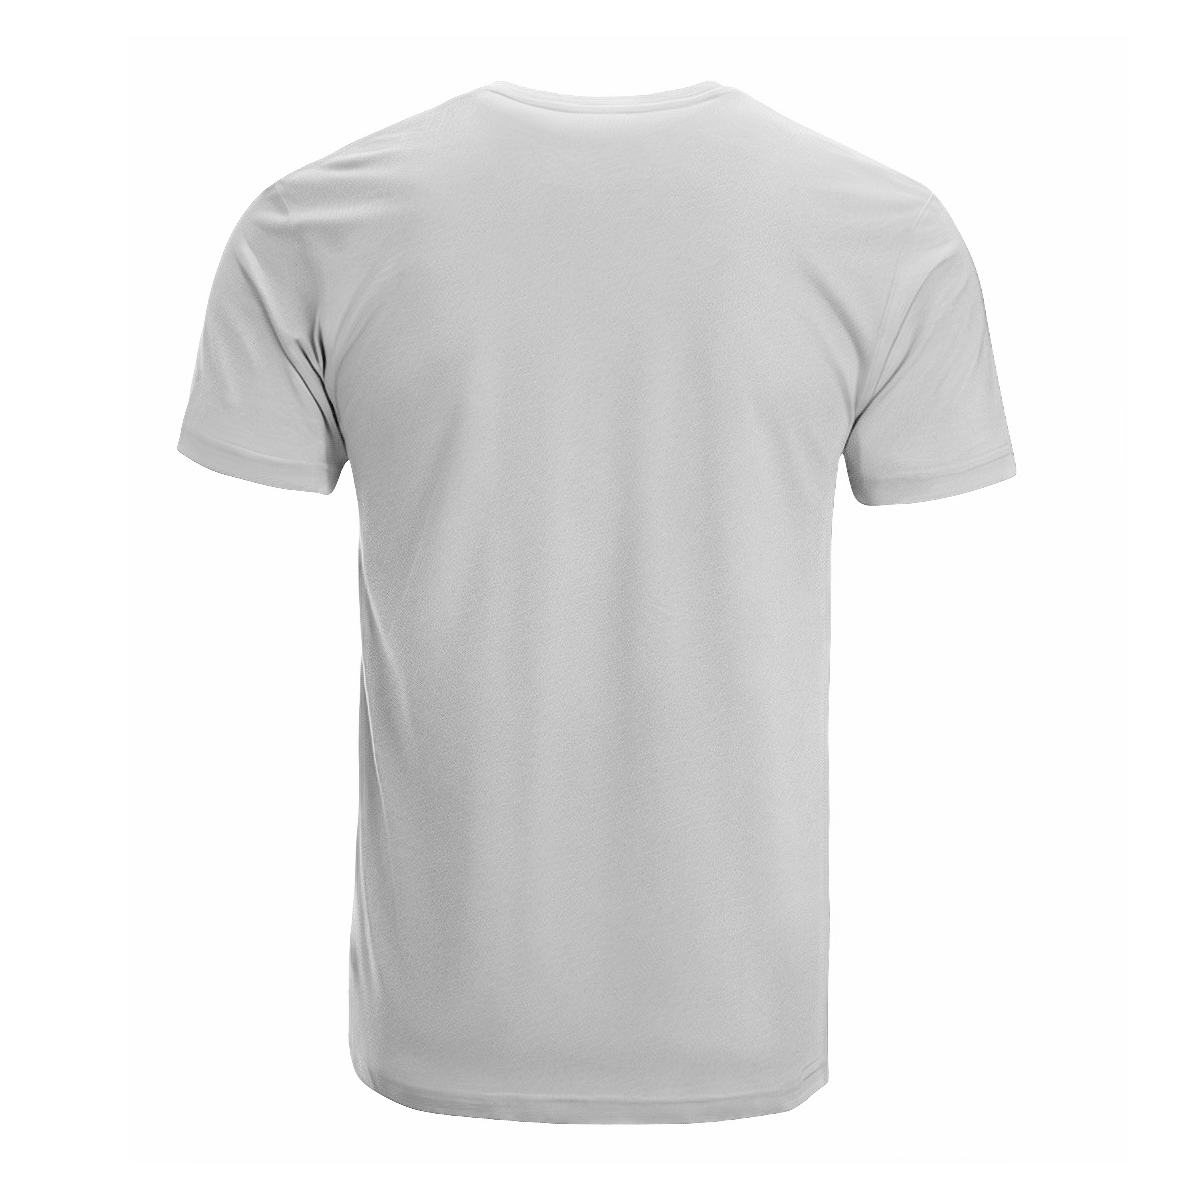 Scottish 2D Unisex T-shirt - Awesome Scottish Style